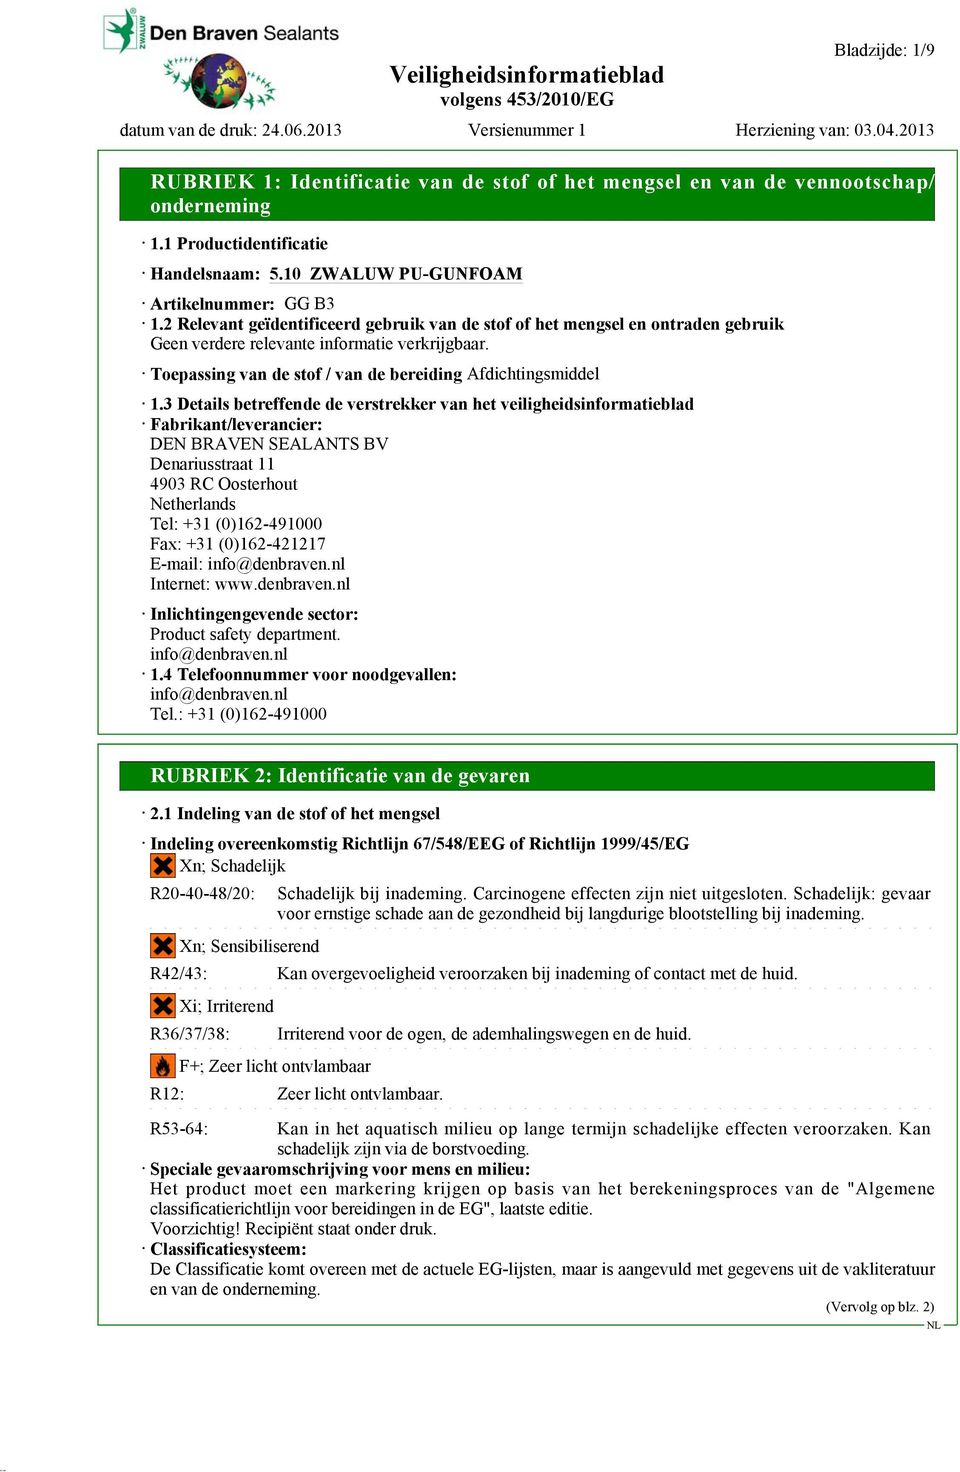 3 Details betreffende de verstrekker van het veiligheidsinformatieblad Fabrikant/leverancier: DEN BRAVEN SEALANTS BV Denariusstraat 11 4903 RC Oosterhout Netherlands Tel: +31 (0)162-491000 Fax: +31